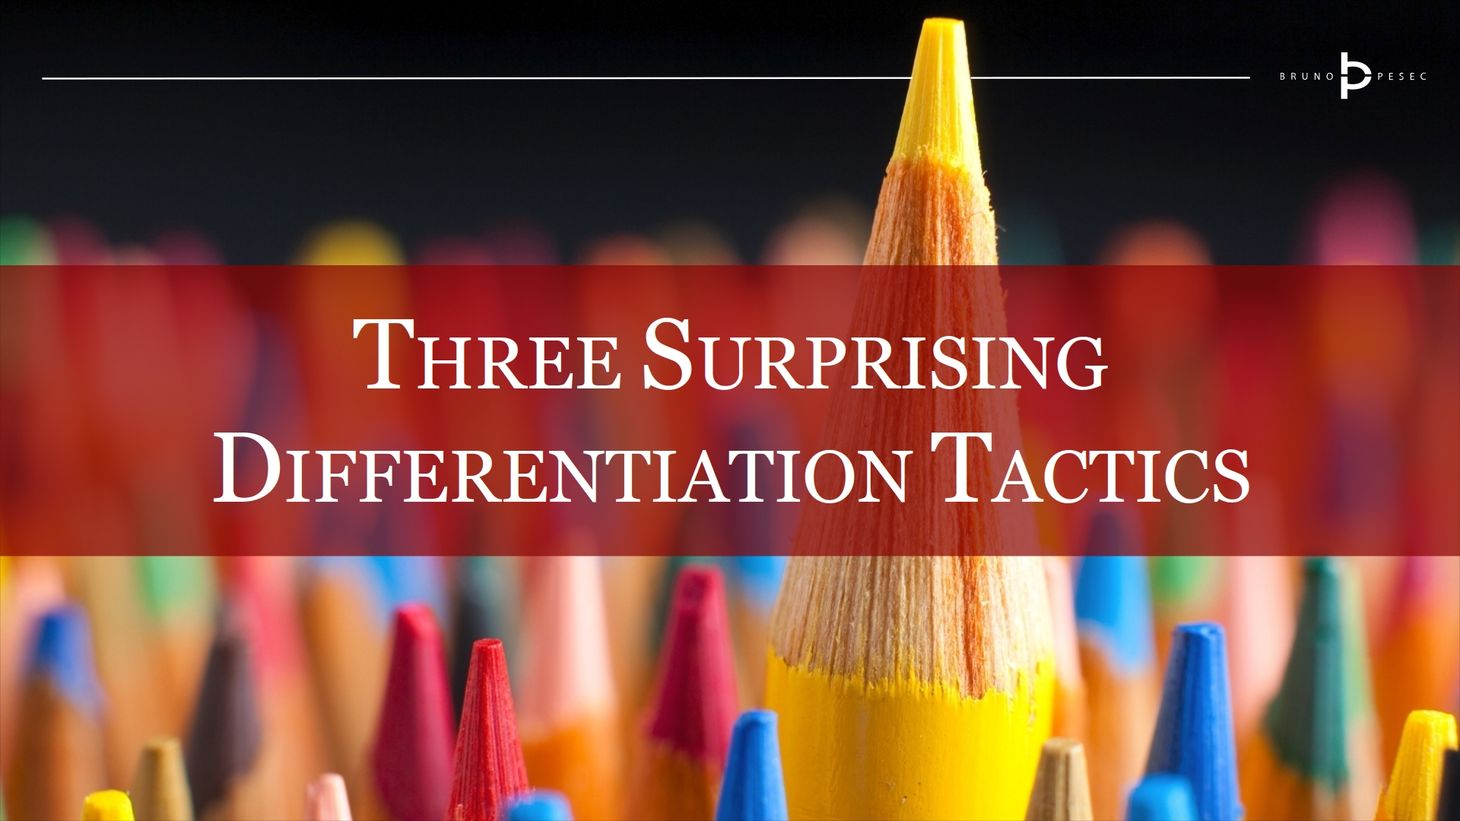 Three surprising differentiation tactics